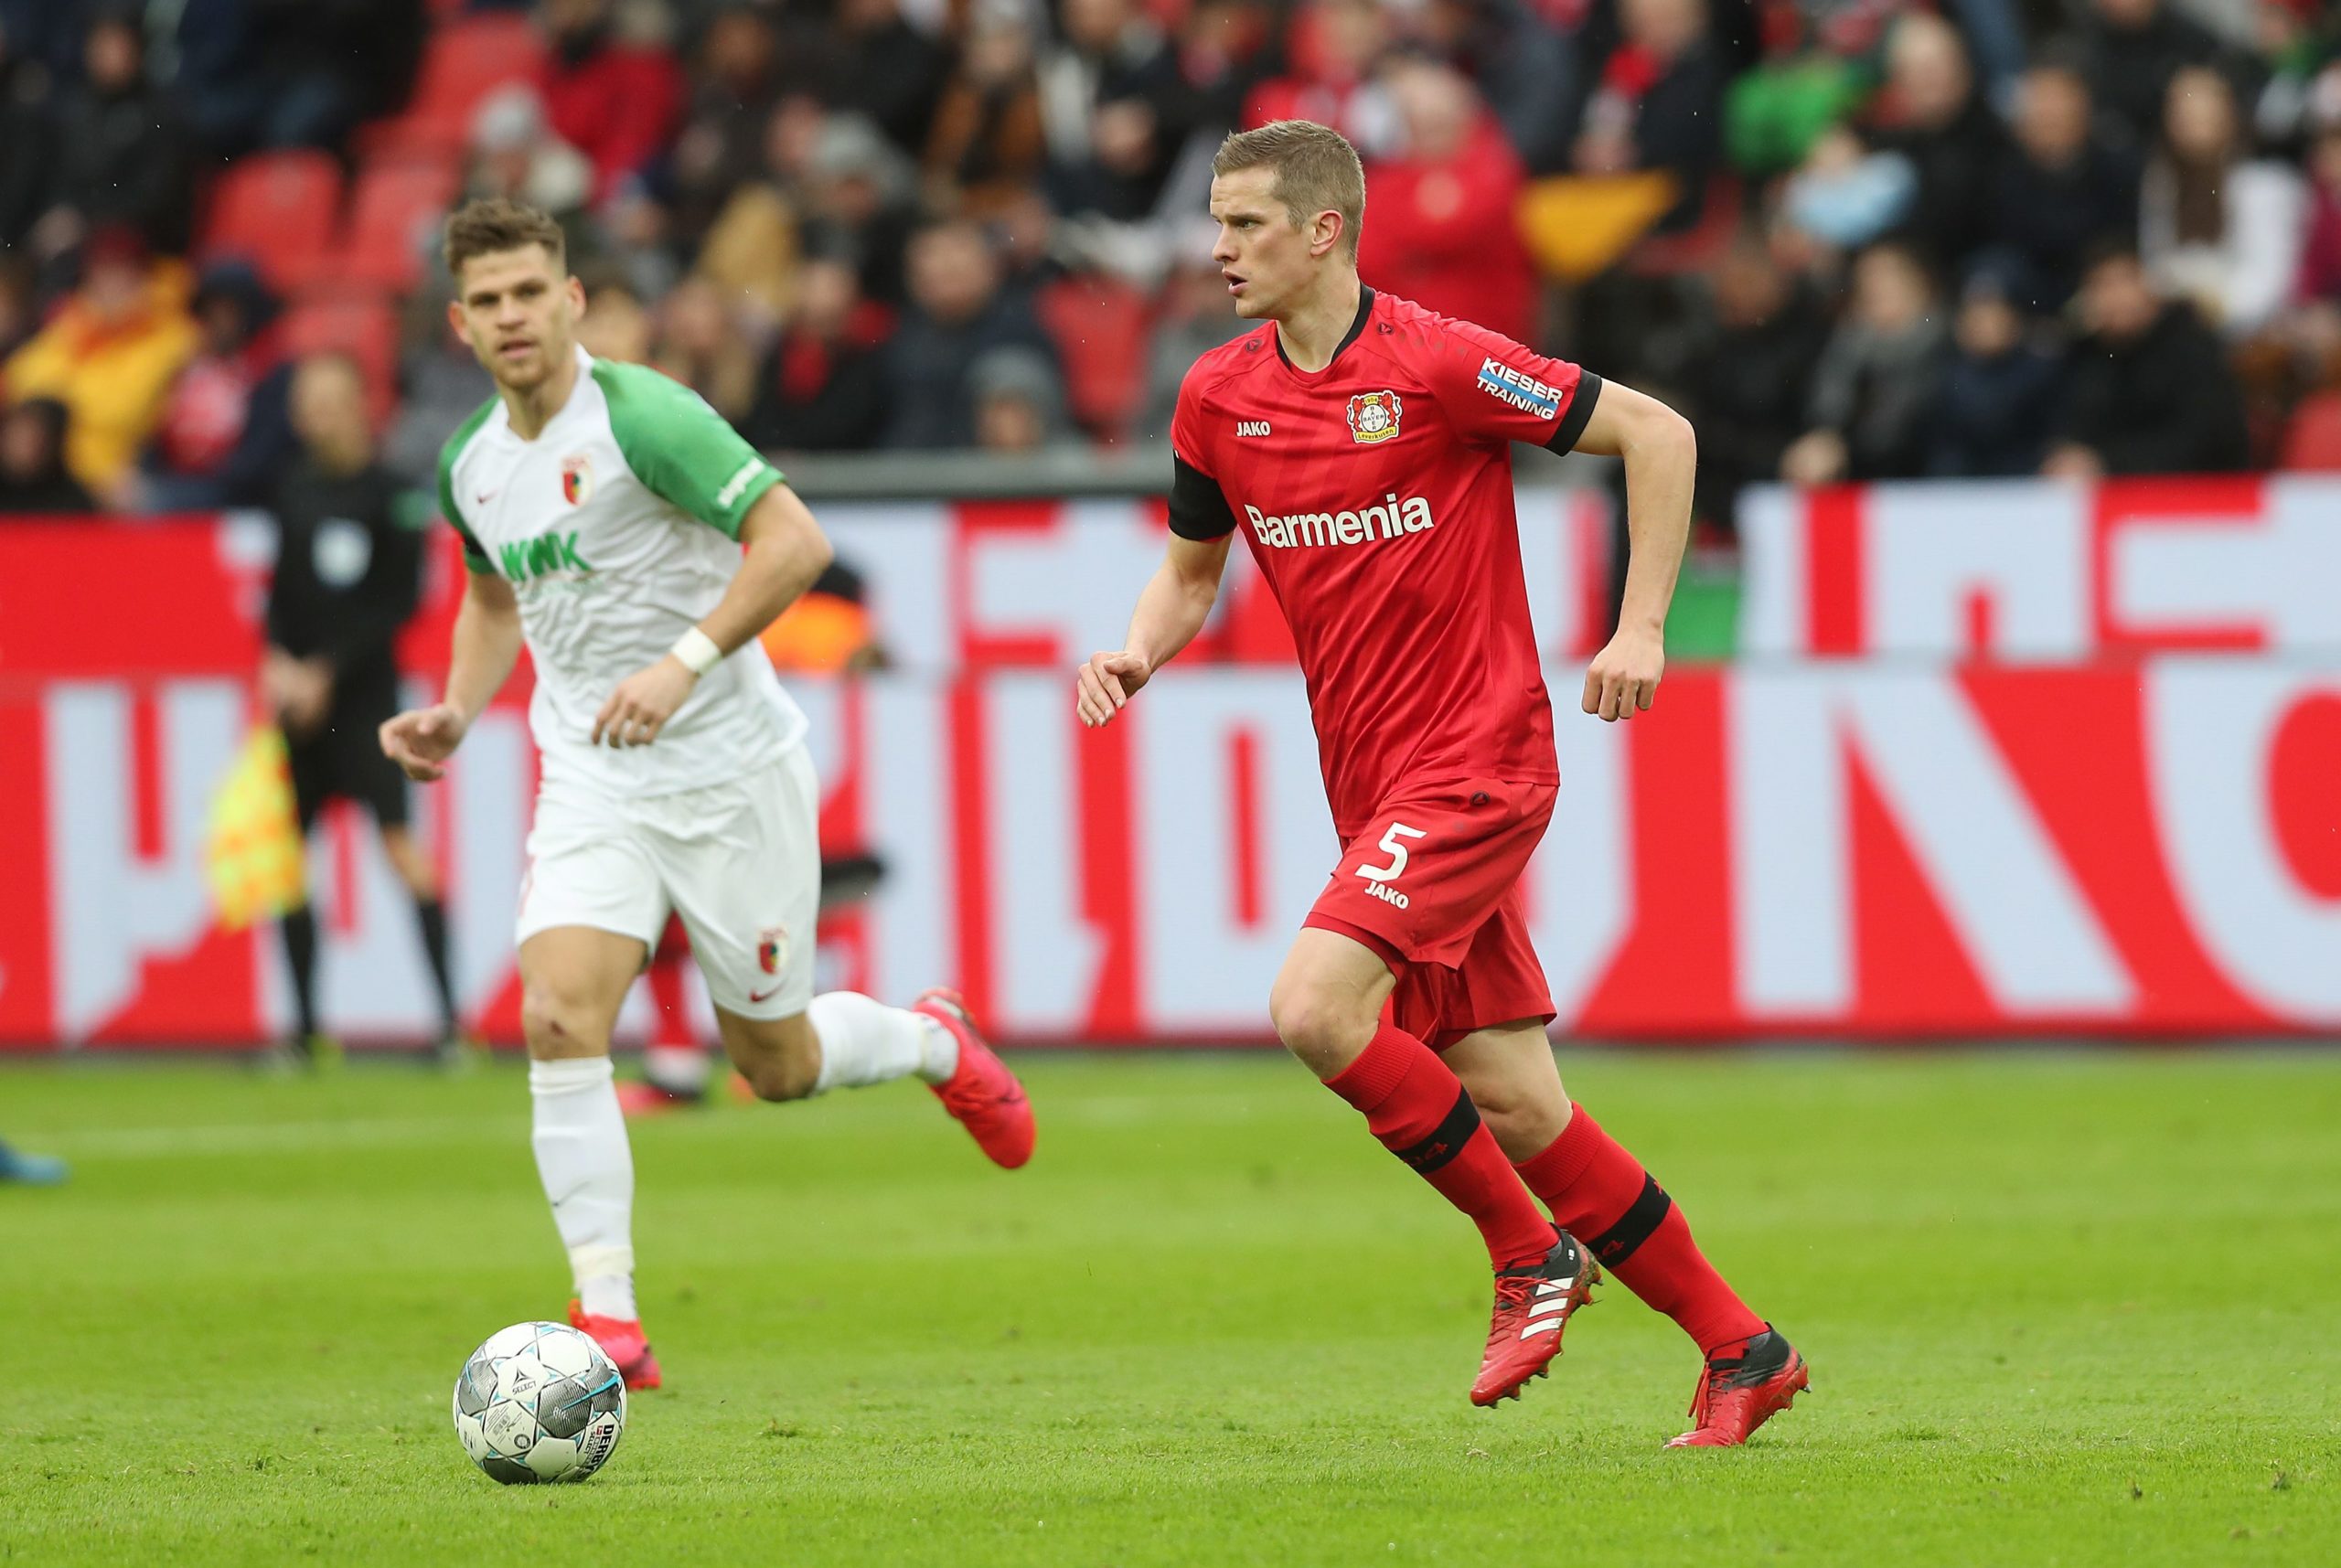 Nhận định kèo bóng đá: Augsburg vs Bayer Leverkusen – 19h30 21/02/2021